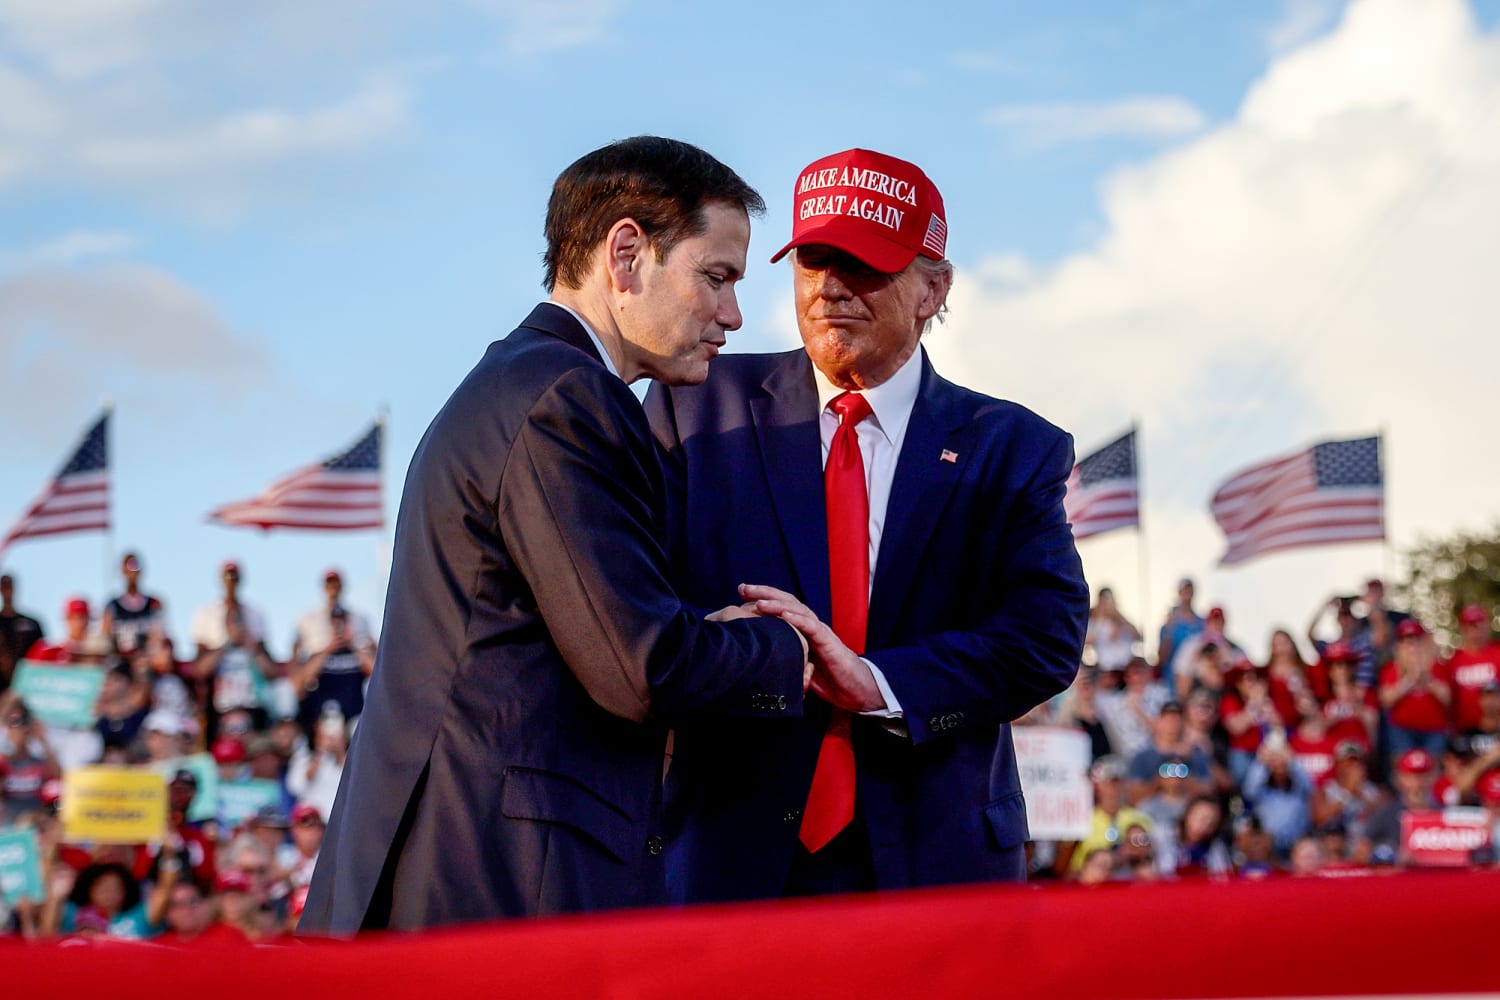 Le sénateur Trump.  Marco Rubio est considéré comme un choix potentiel de vice-président